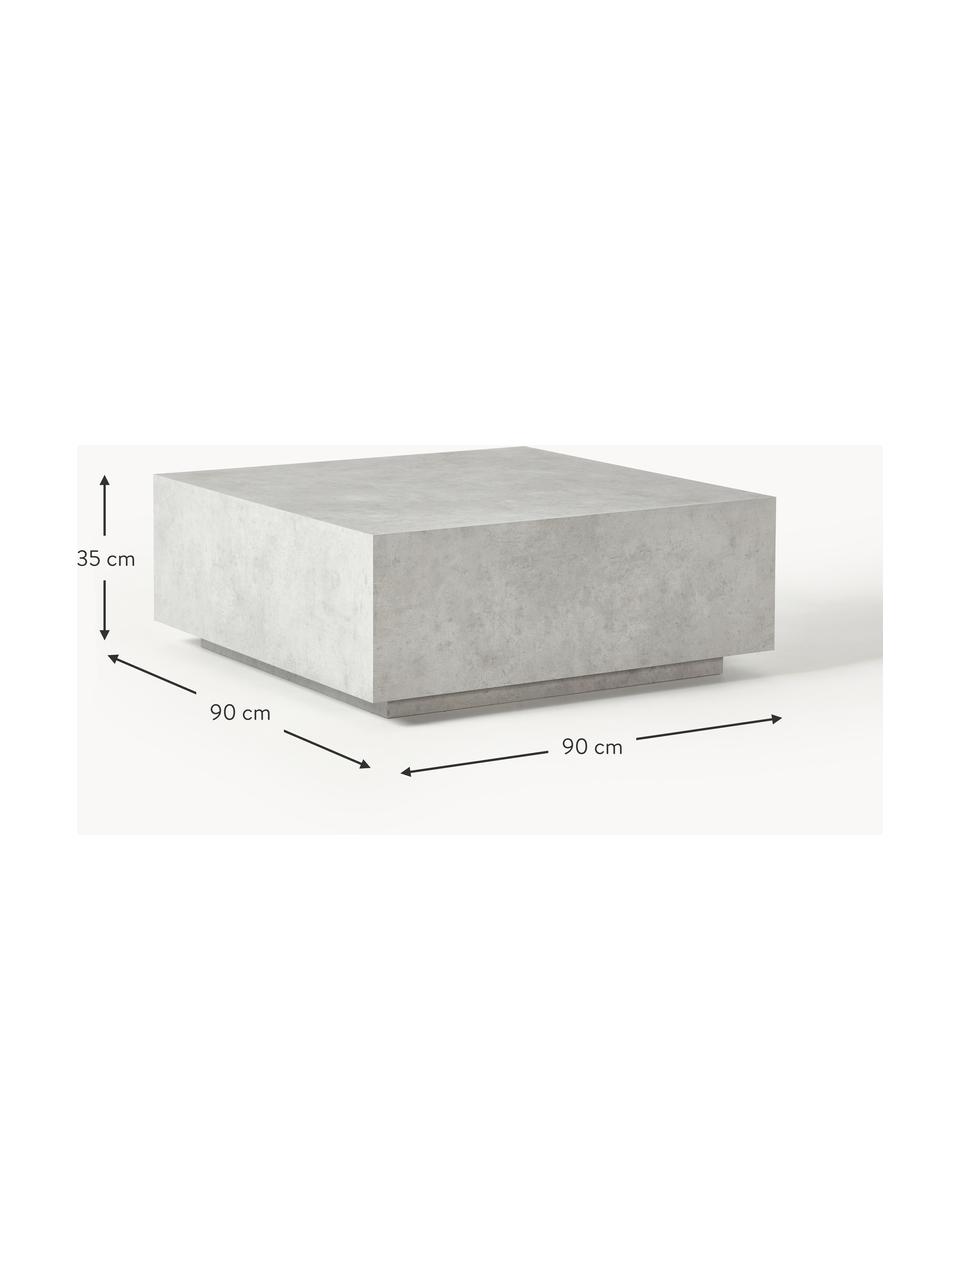 Konferenční stolek v betonovém vzhledu Lesley, Dřevovláknitá deska střední hustoty (MDF) pokrytá melaminovou fólií, mangové dřevo, Šedý betonový vzhled, matný, Š 90 cm, H 90 cm